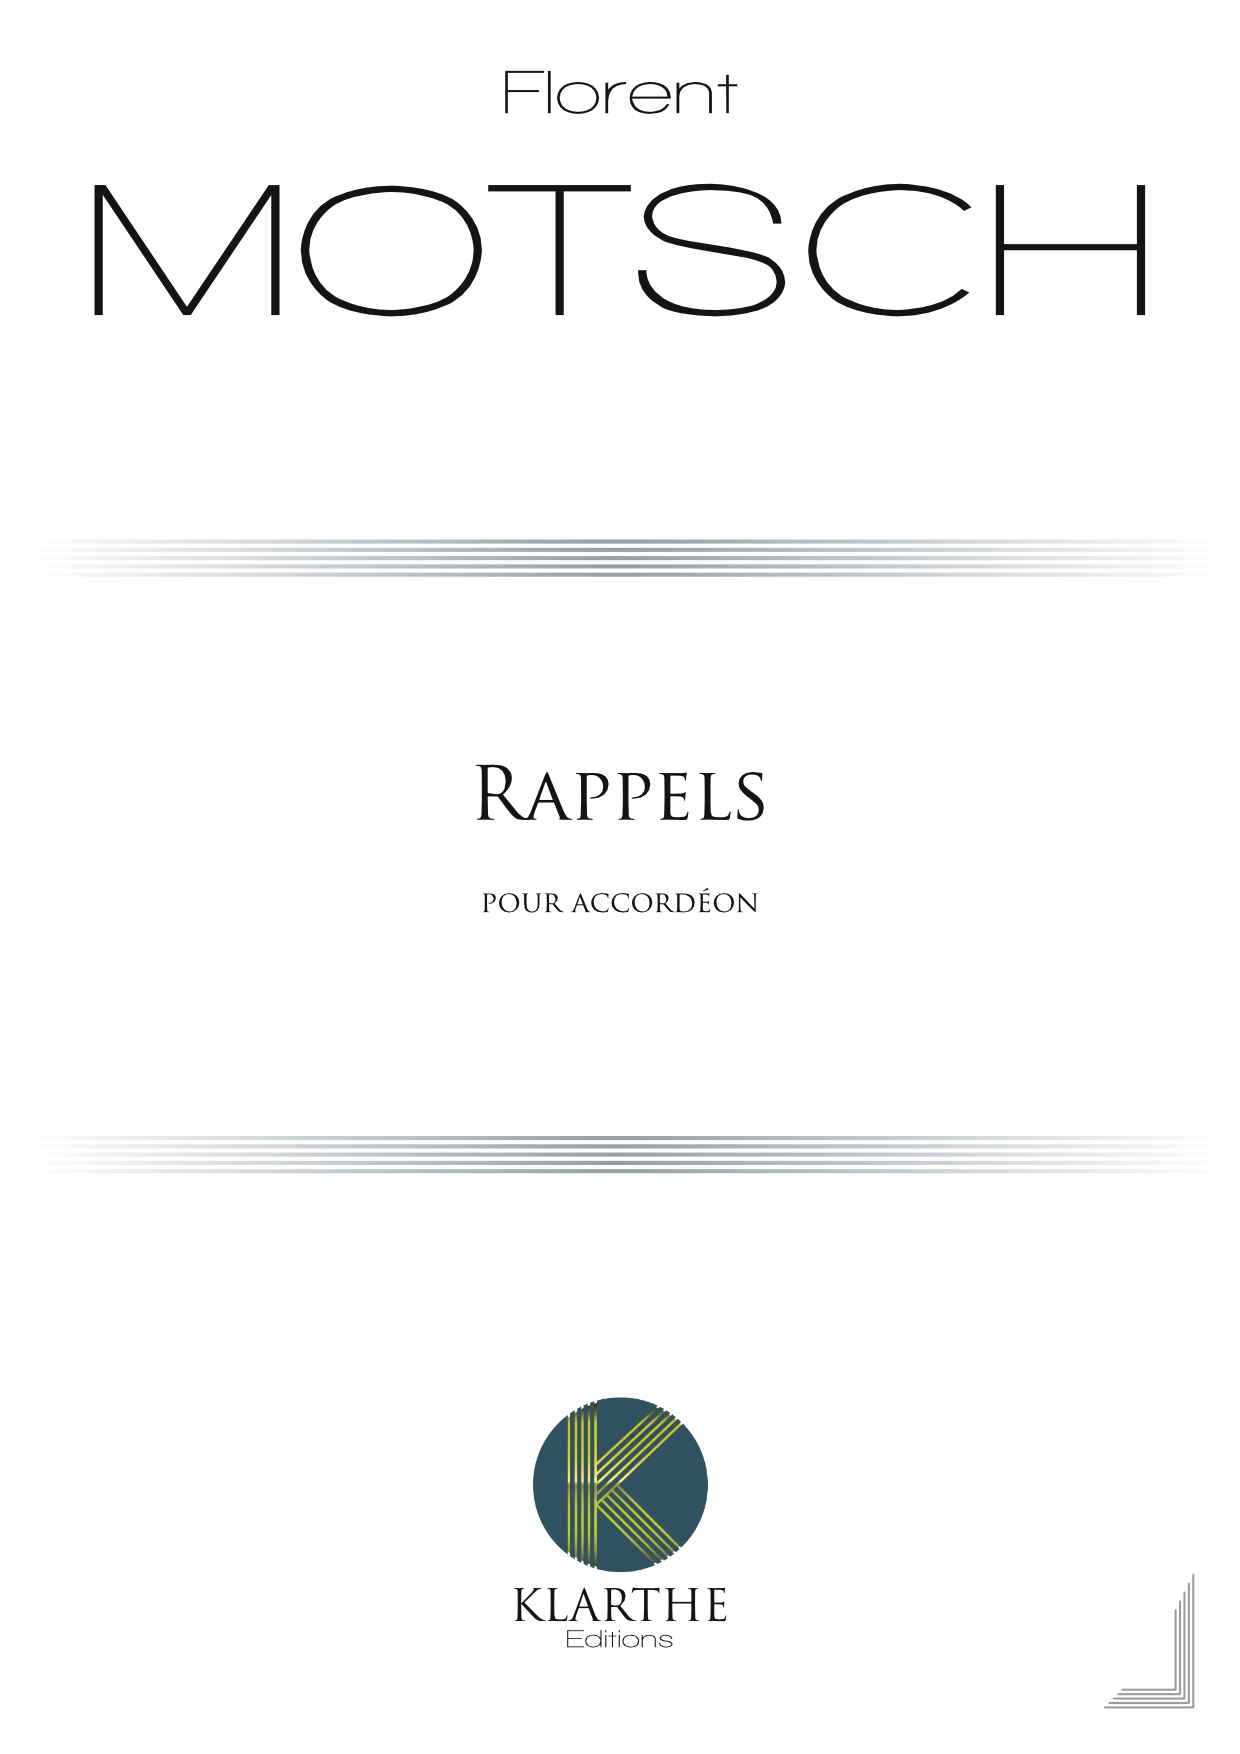 Rappels (MOTSCH FLORENT)